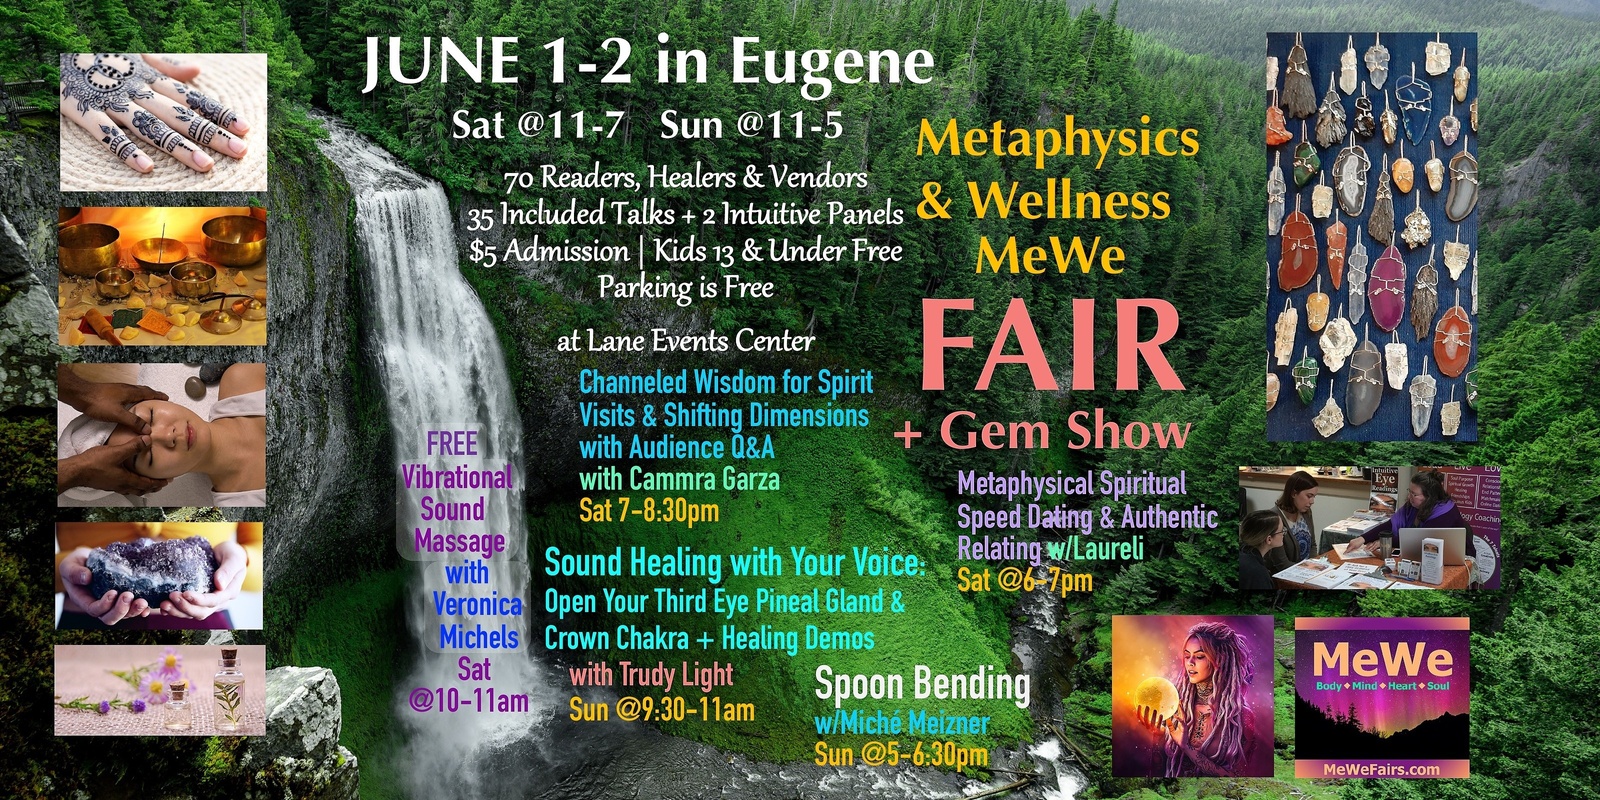 Banner image for Metaphysics & Wellness MeWe Fair + Gem Show in Eugene on June 1-2